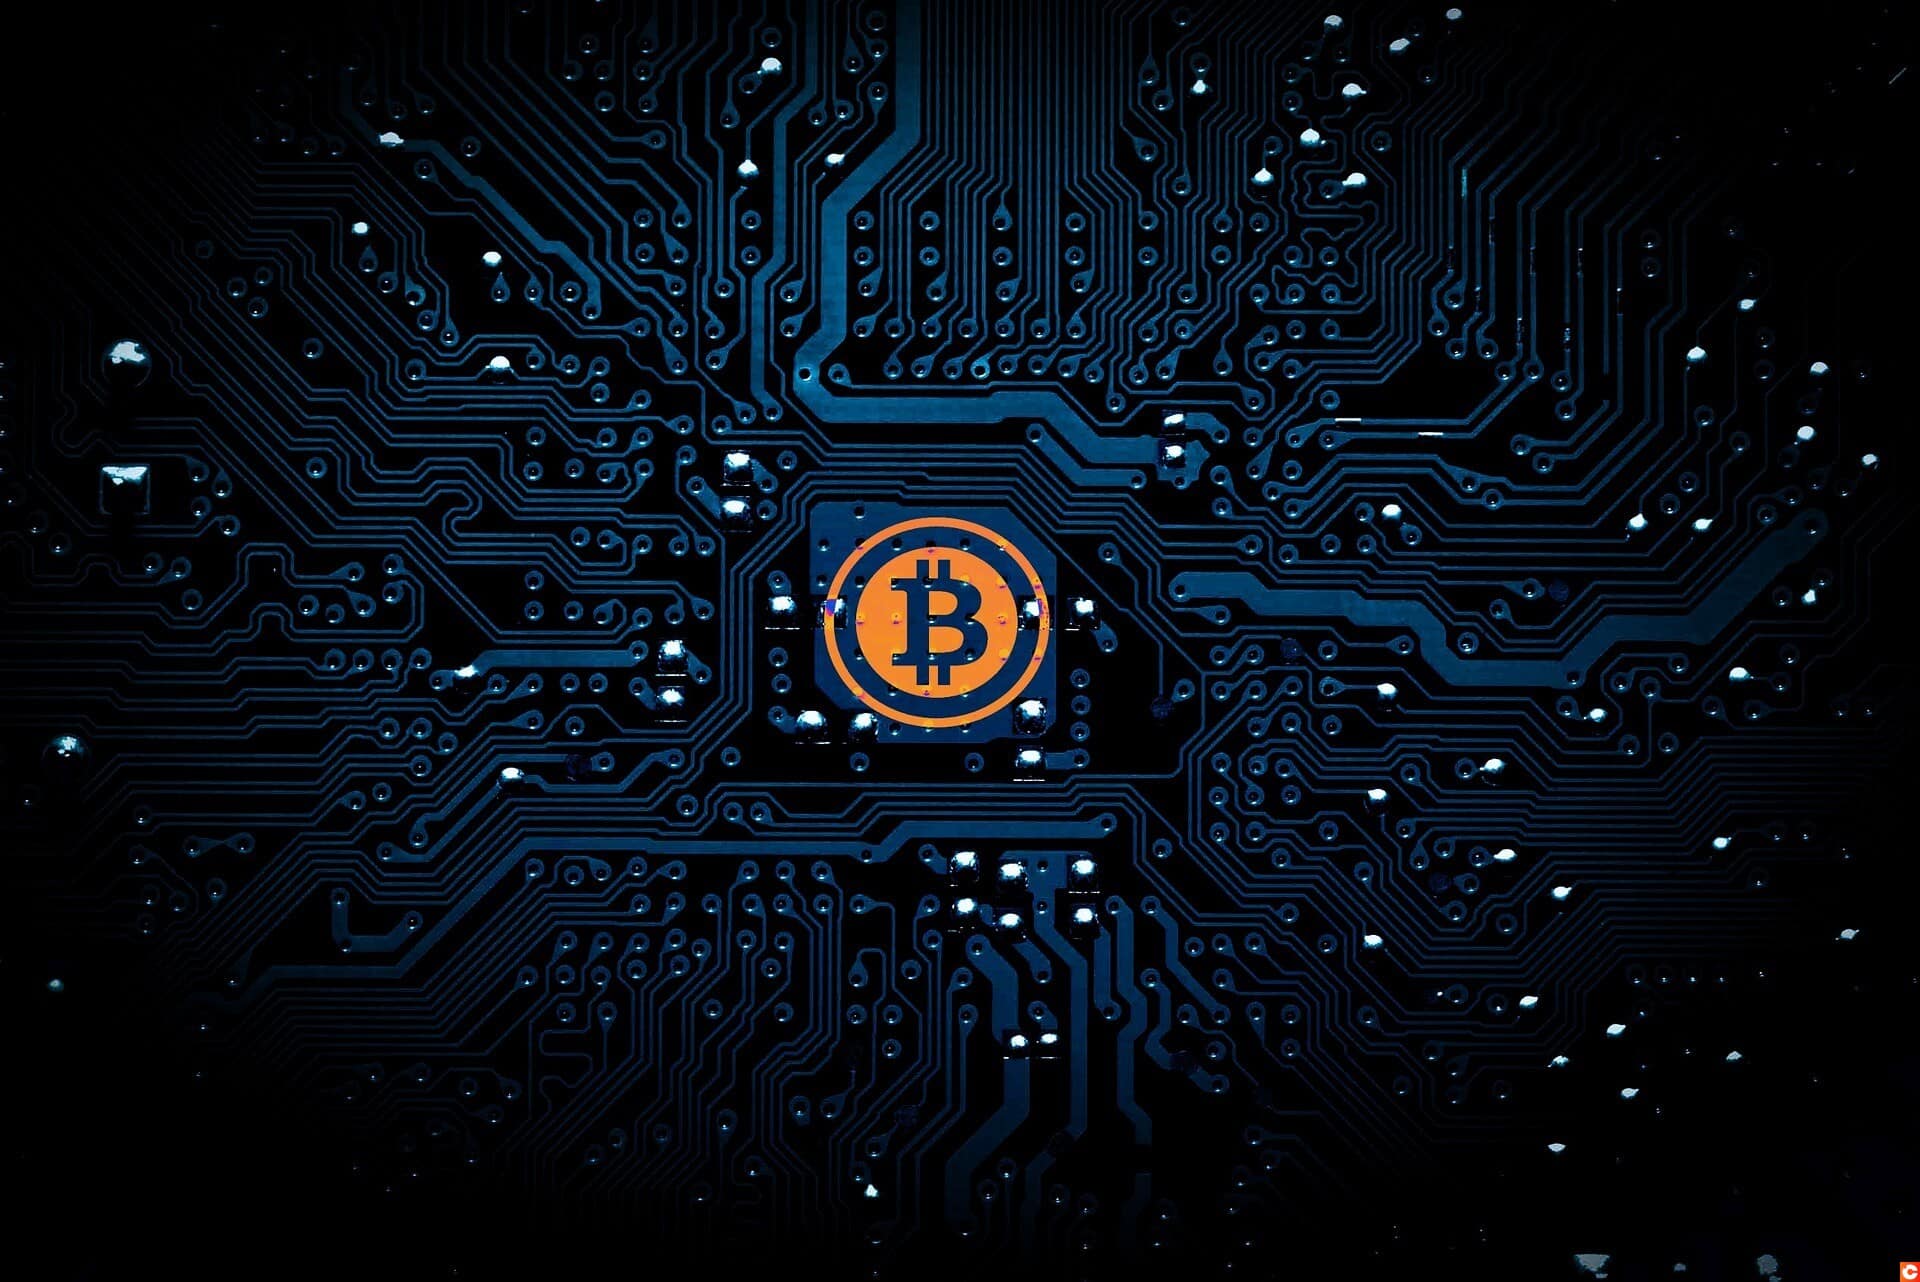 “Le Bitcoin (BTC) est la première monnaie de référence dans le monde digital”